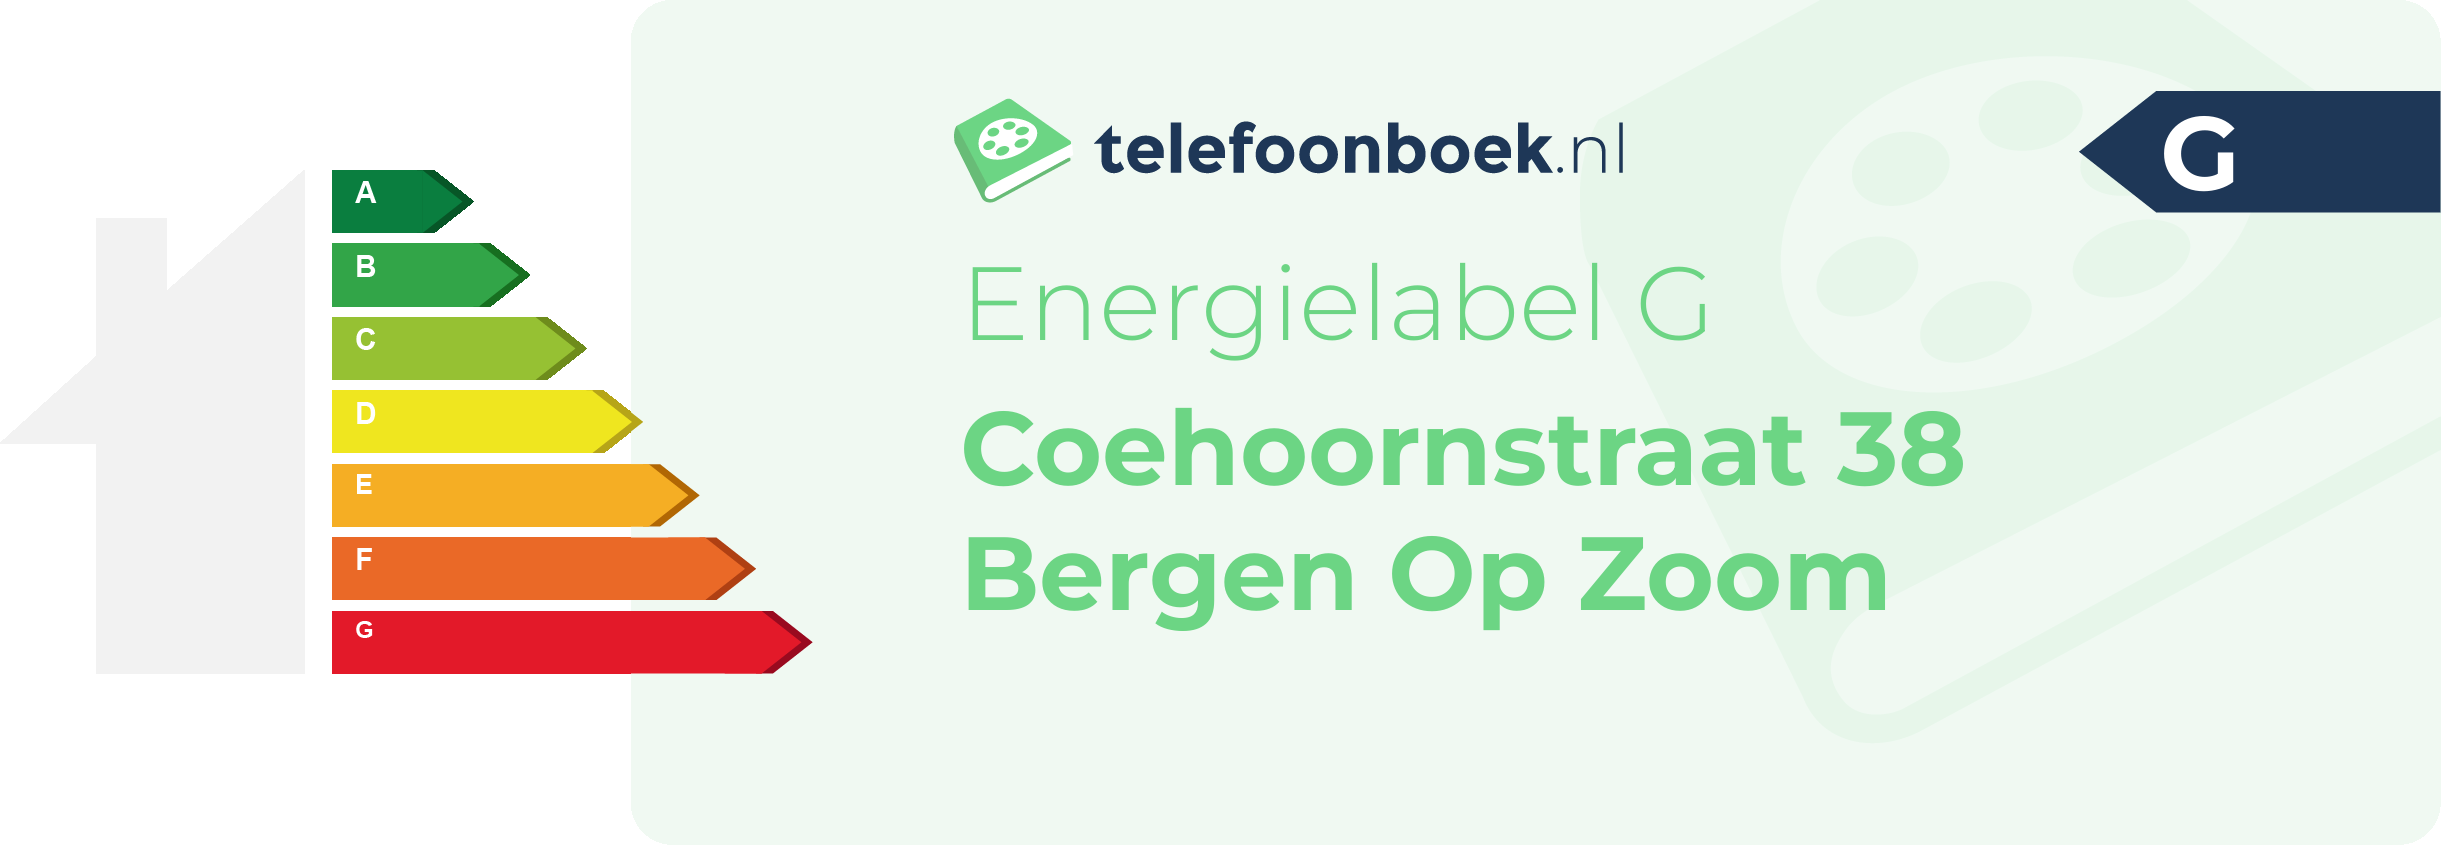 Energielabel Coehoornstraat 38 Bergen Op Zoom